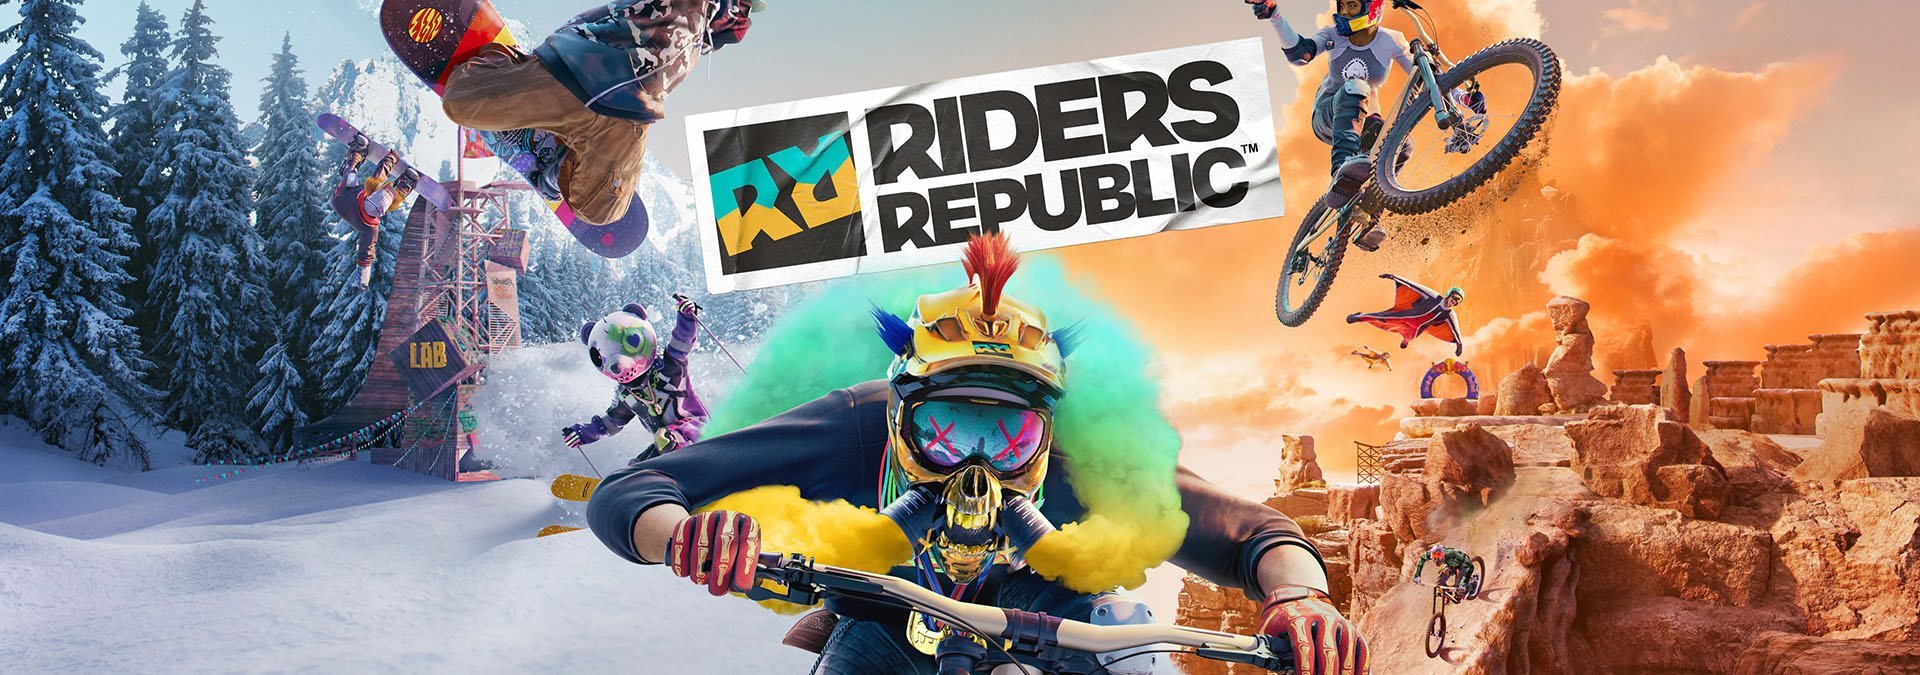 riders-republic-cover